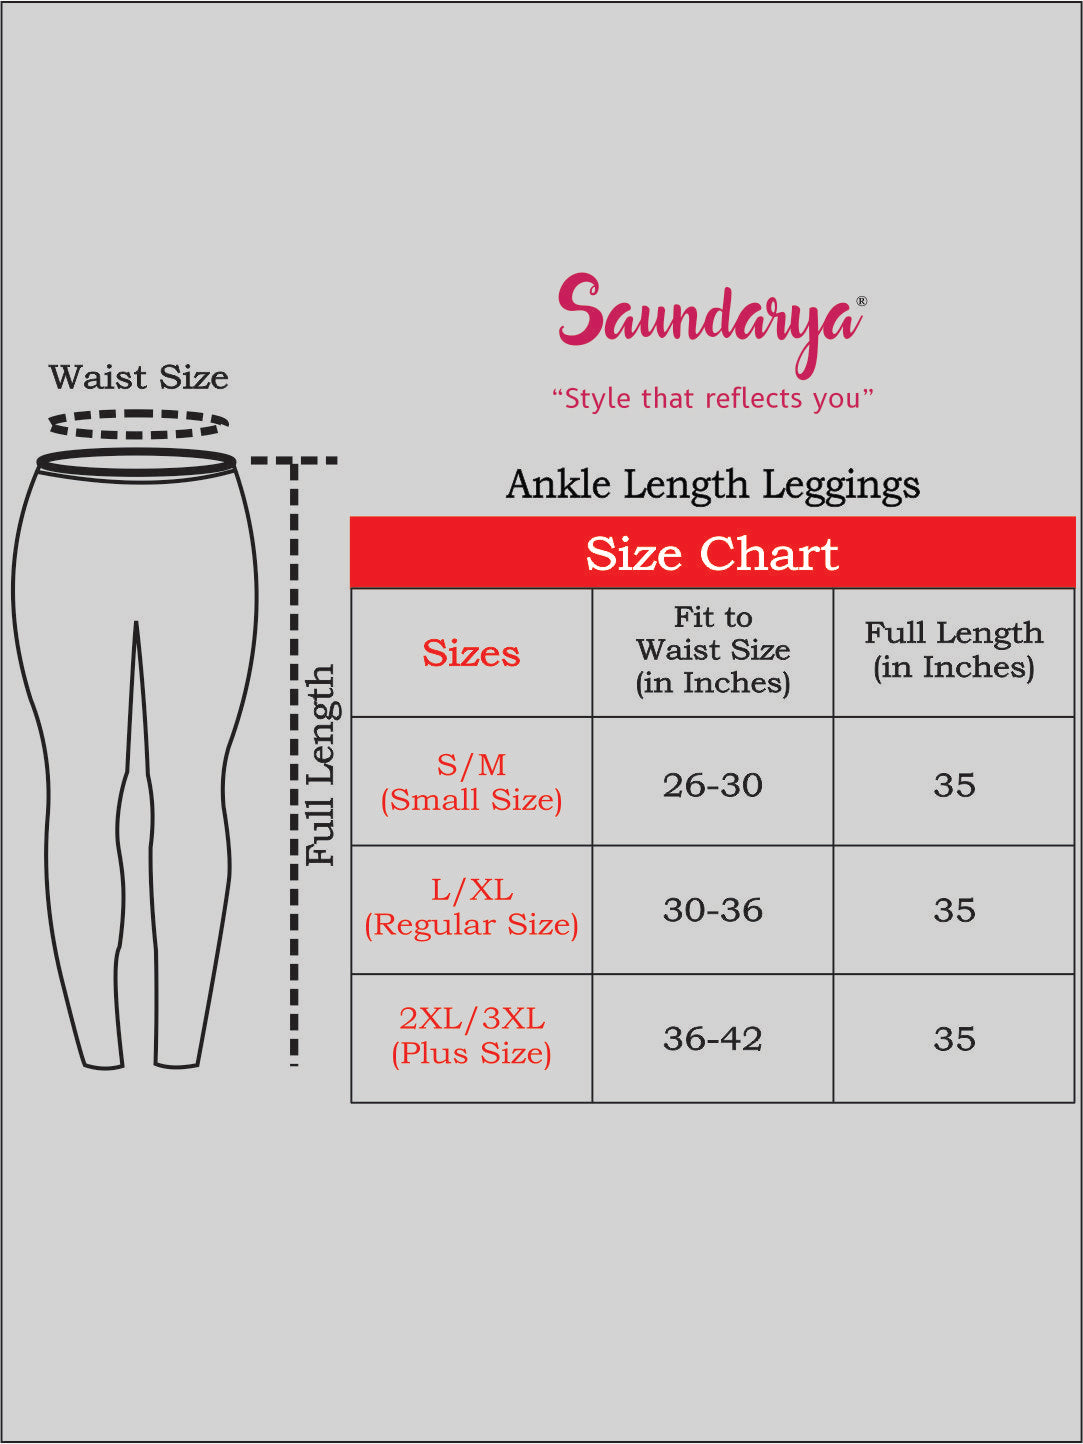 Saundarya Women's Red Ankle Length Leggings Cotton